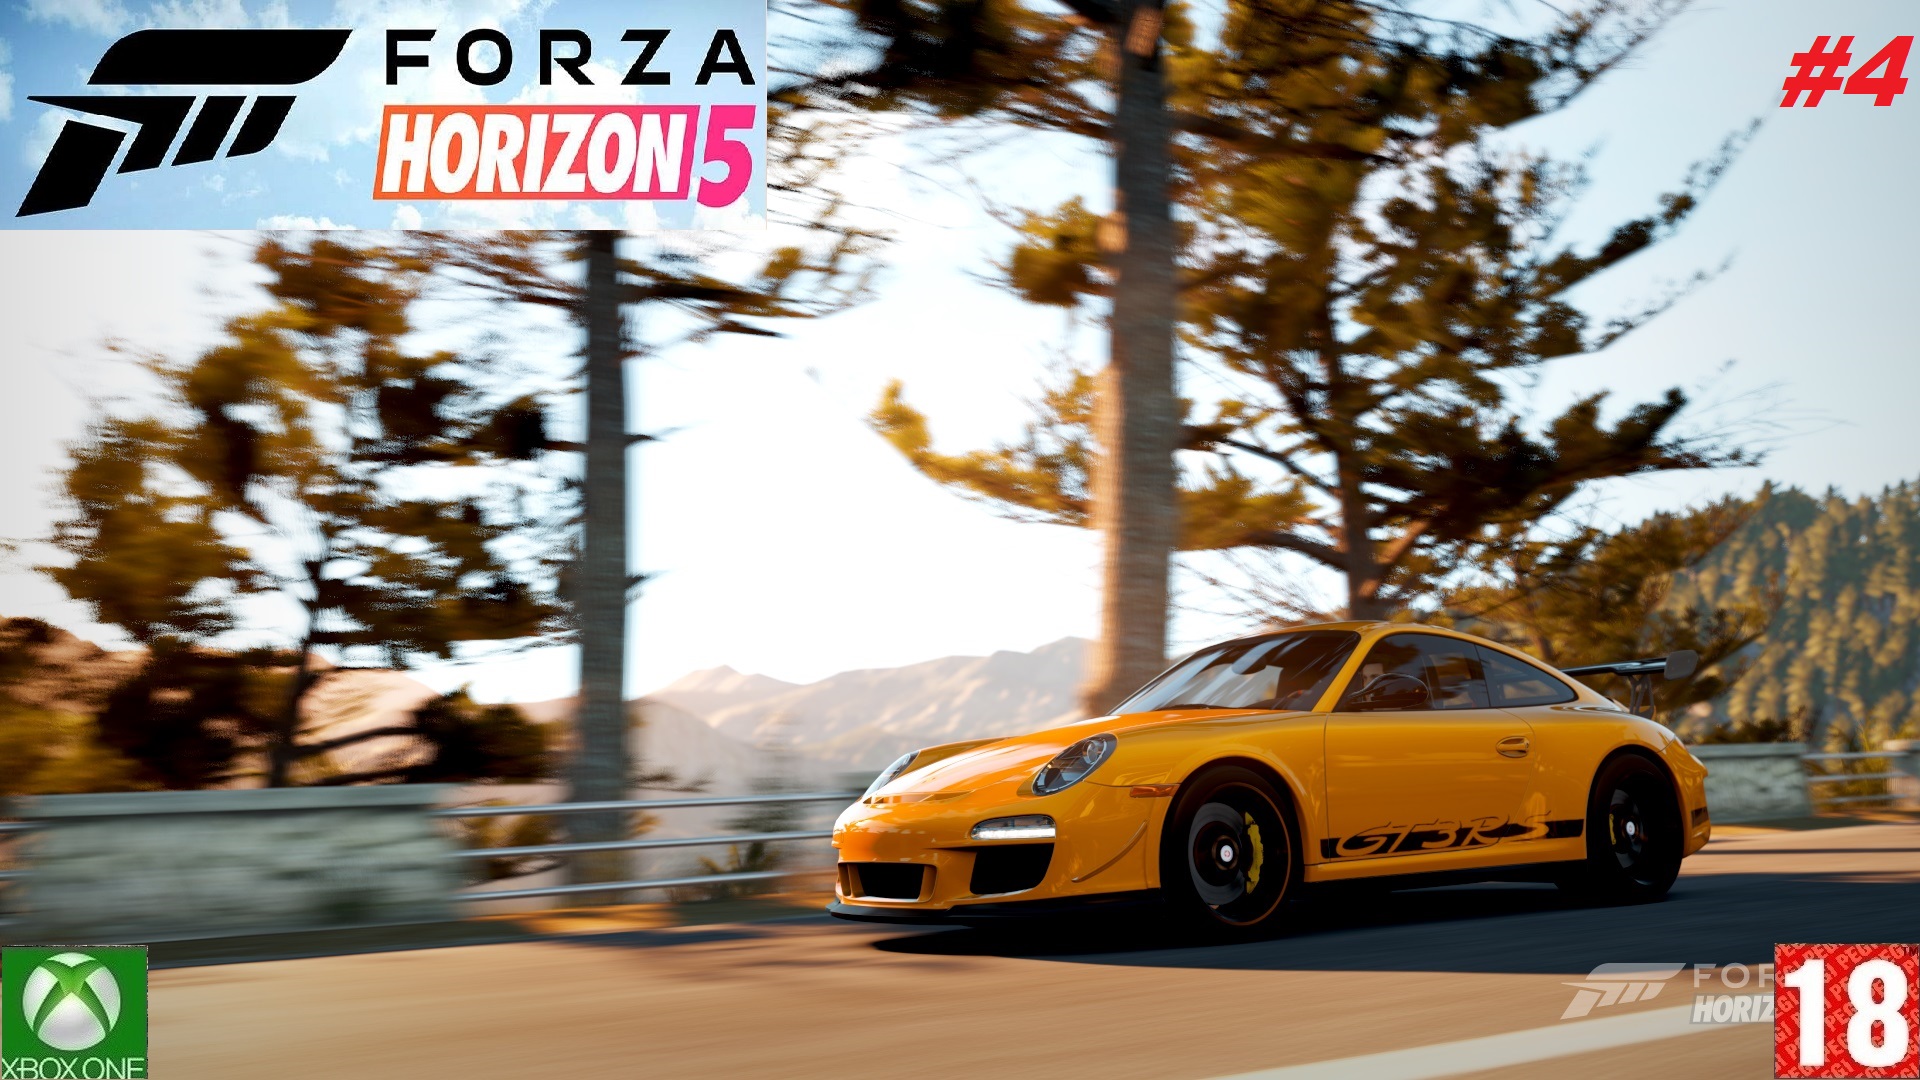 Forza Horizon 5 (Xbox One) - Прохождение - #4, Добро пожаловать в Мексику. (без комментариев)